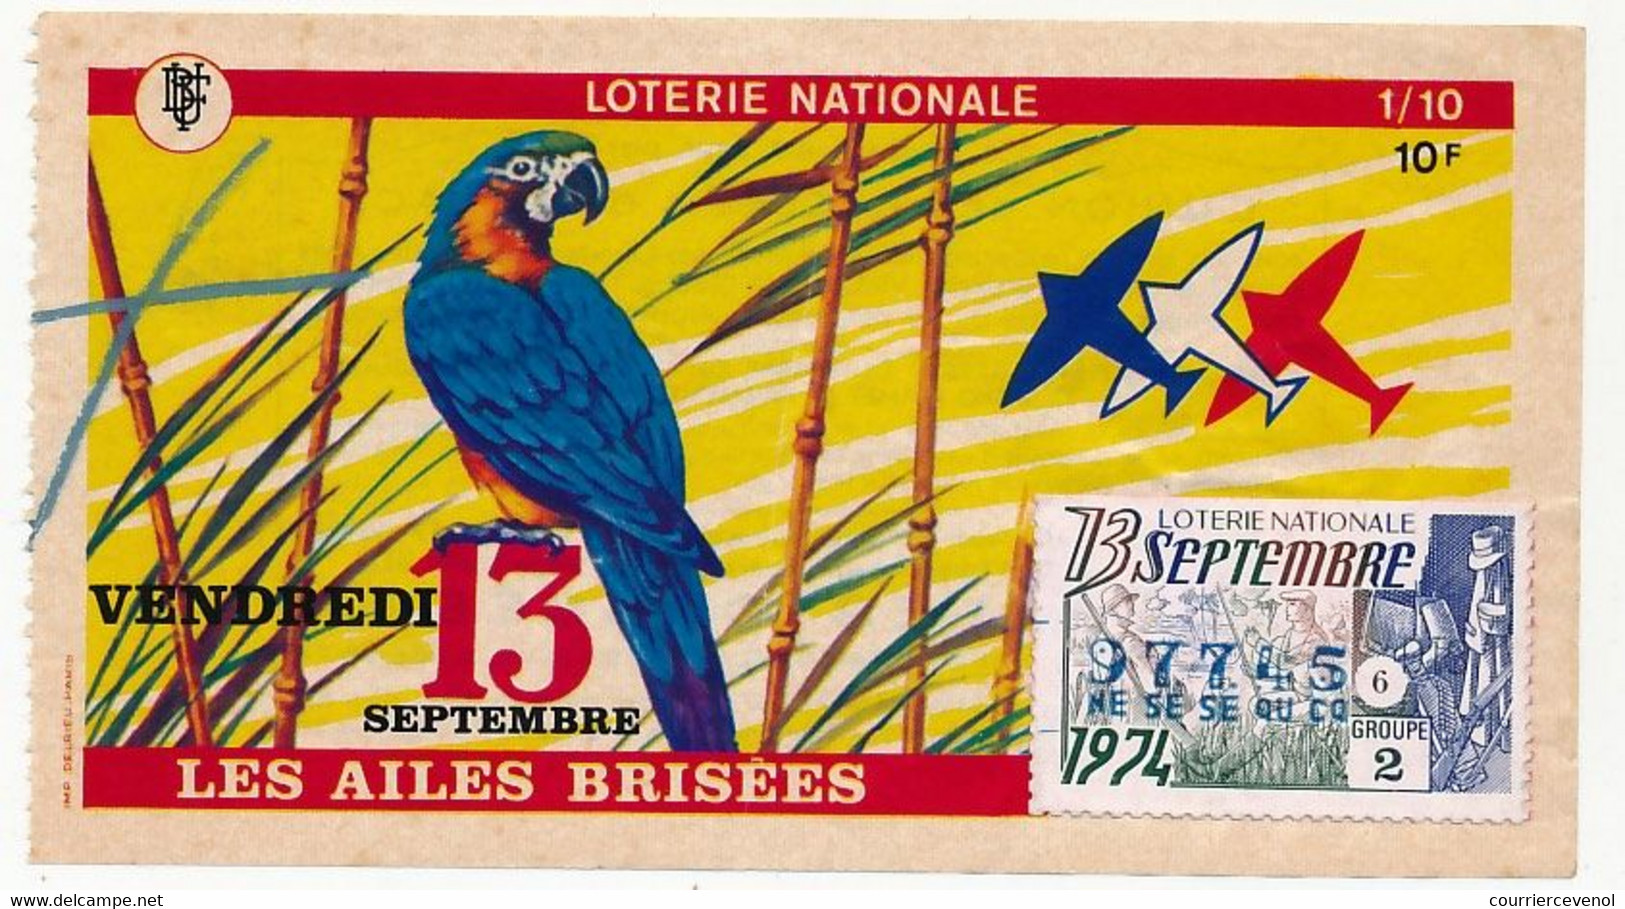 FRANCE - Loterie Nationale - 1/10ème - Les Ailes Brisées - (Perroquet) - Vendredi 13 Septembre 1974 - Billets De Loterie